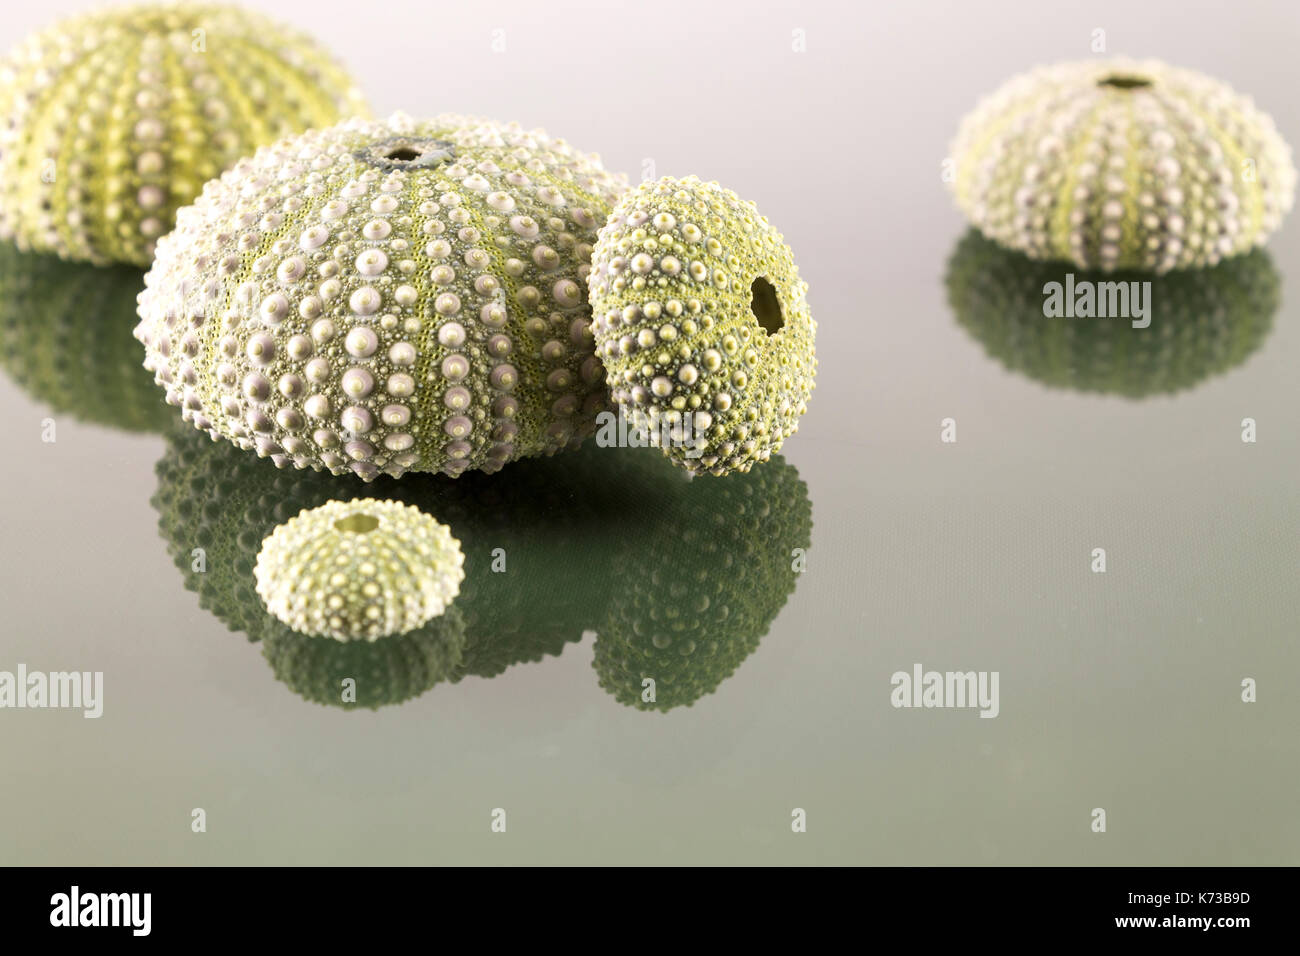 Sea urchin shell in studio Stock Photo